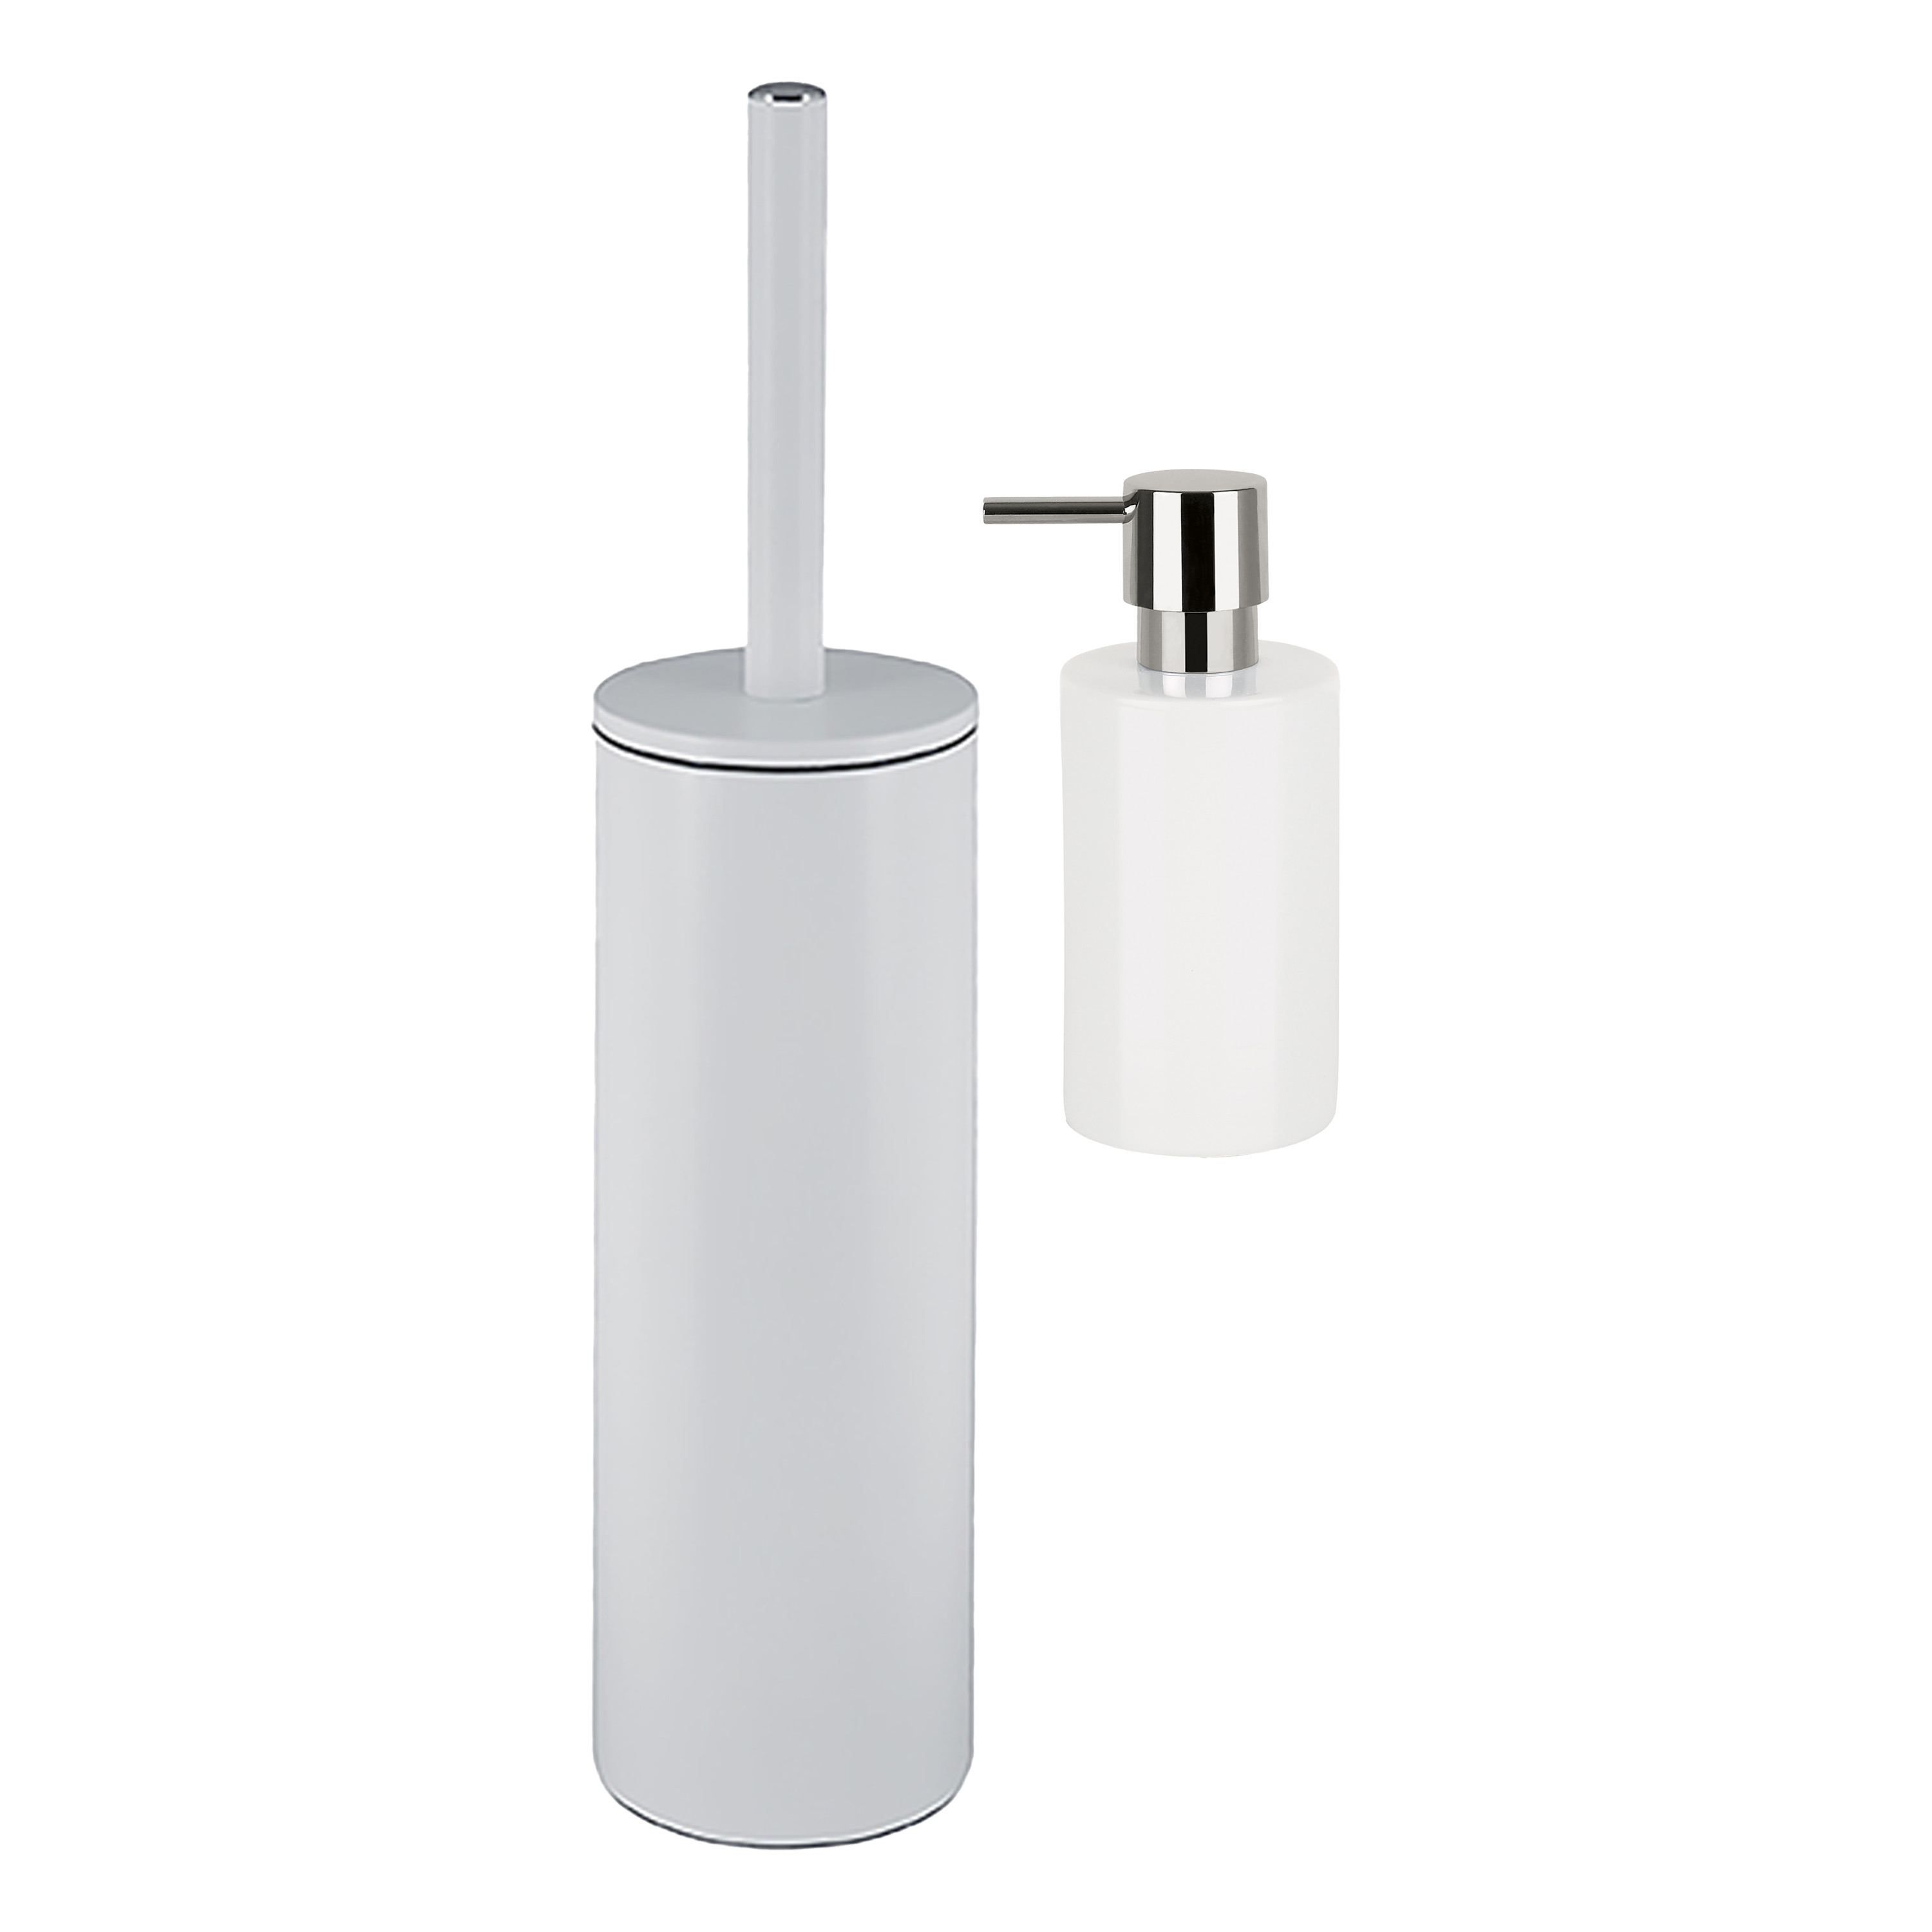 Spirella Badkamer accessoires set - WC-borstel/zeeppompje - metaal/porselein - ivoor wit - Luxe uitstraling